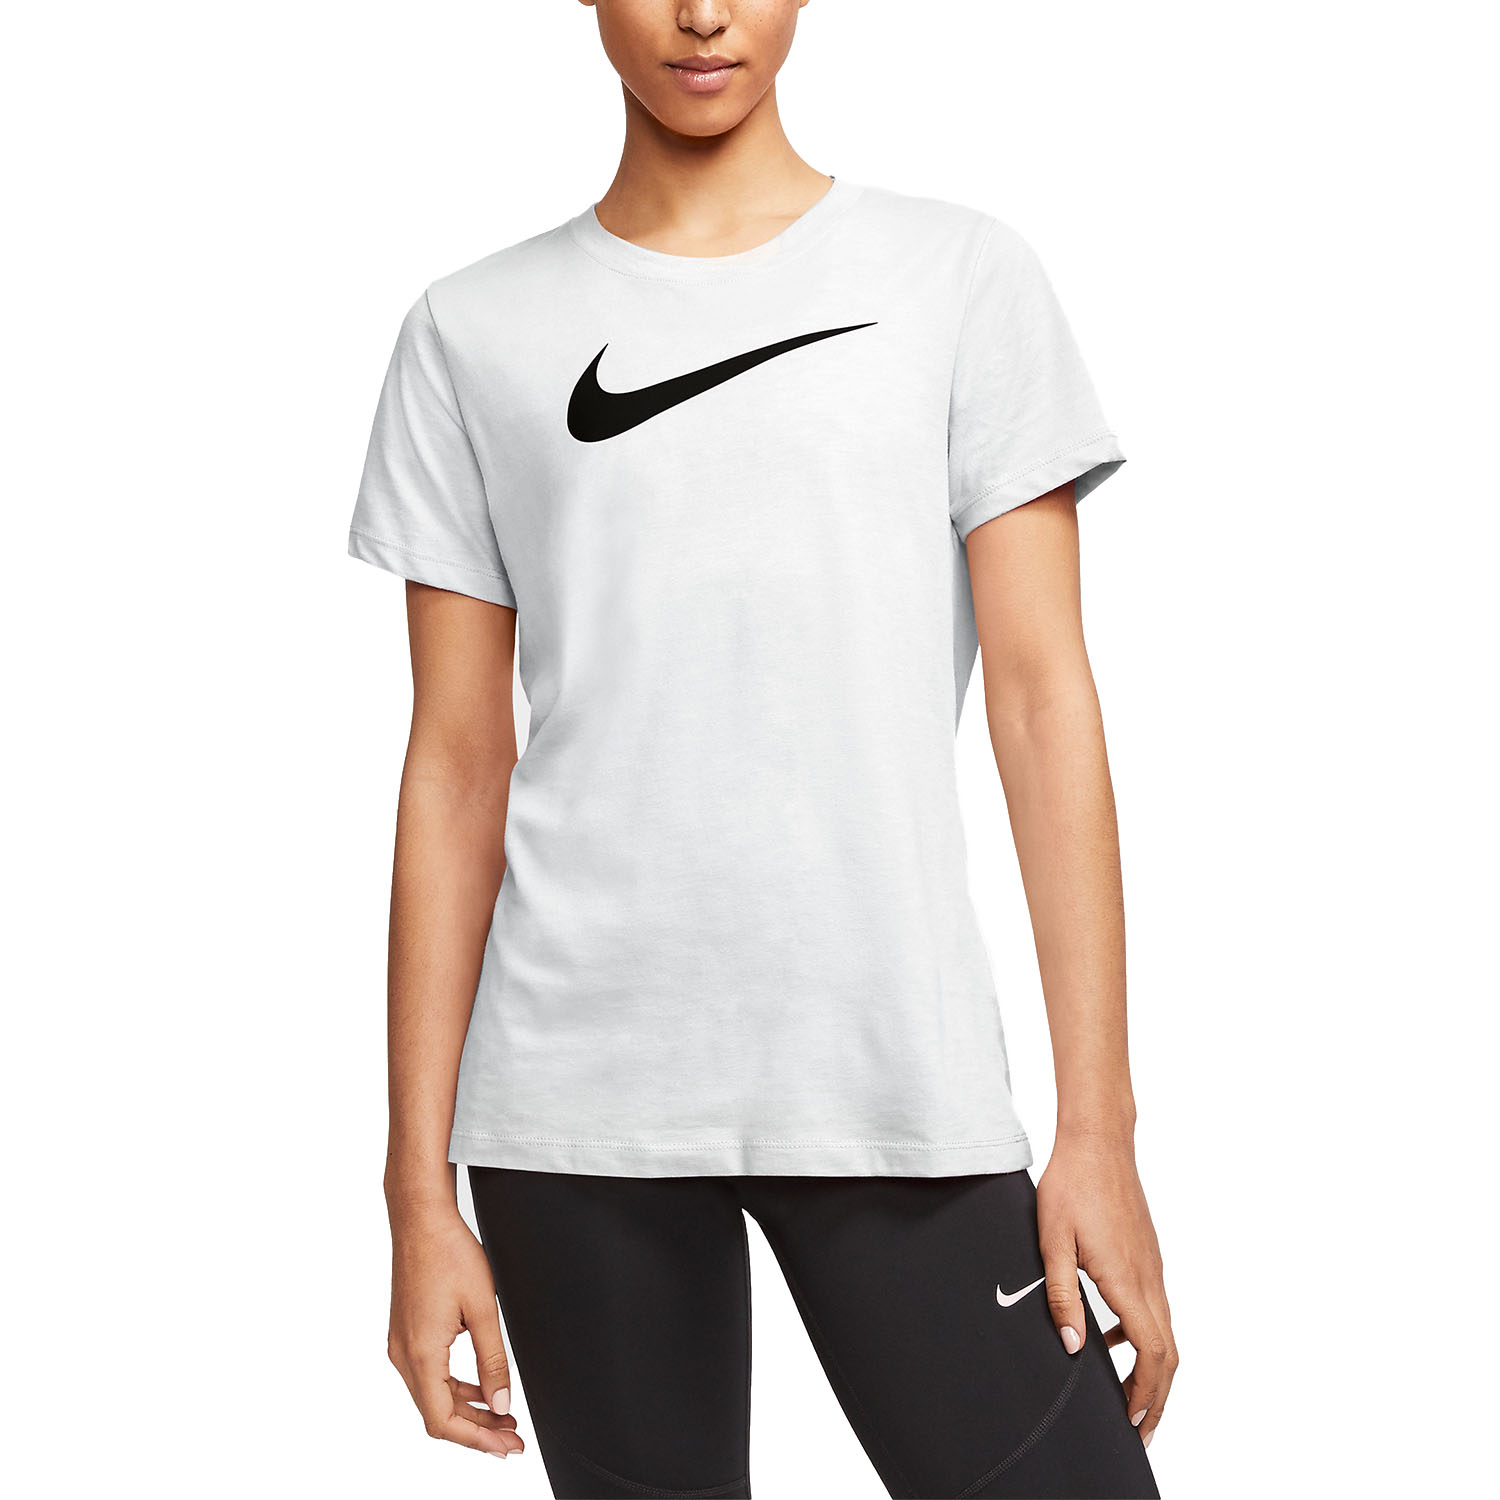 Nike Dry Crew Women's Training T-Shirt - White/Heather/Black